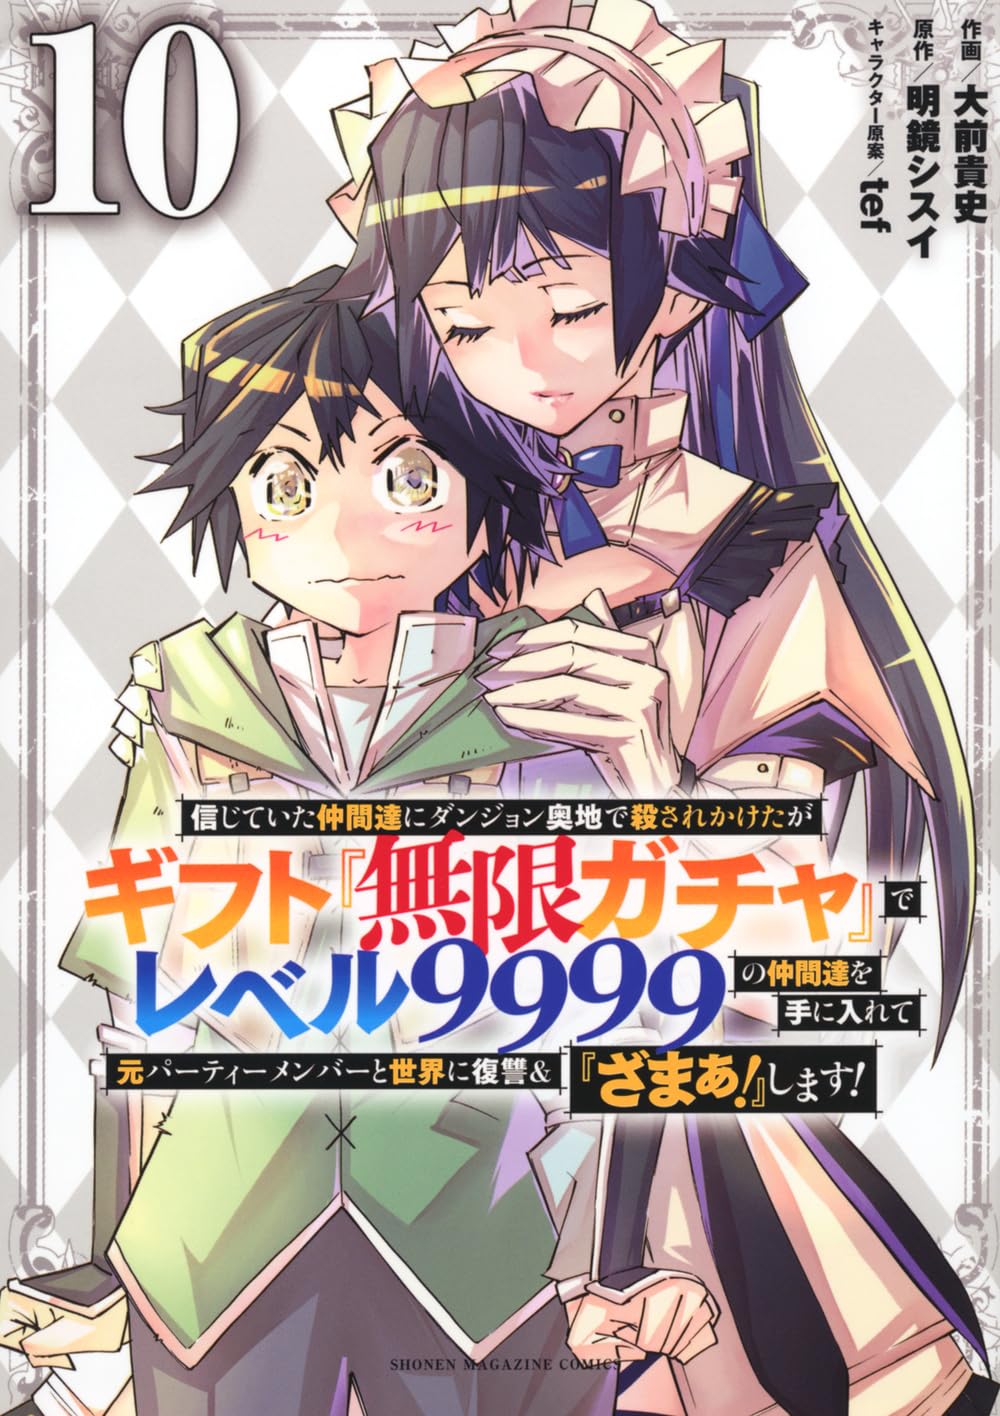 my gift lvl 9999 unlimited gacha manga